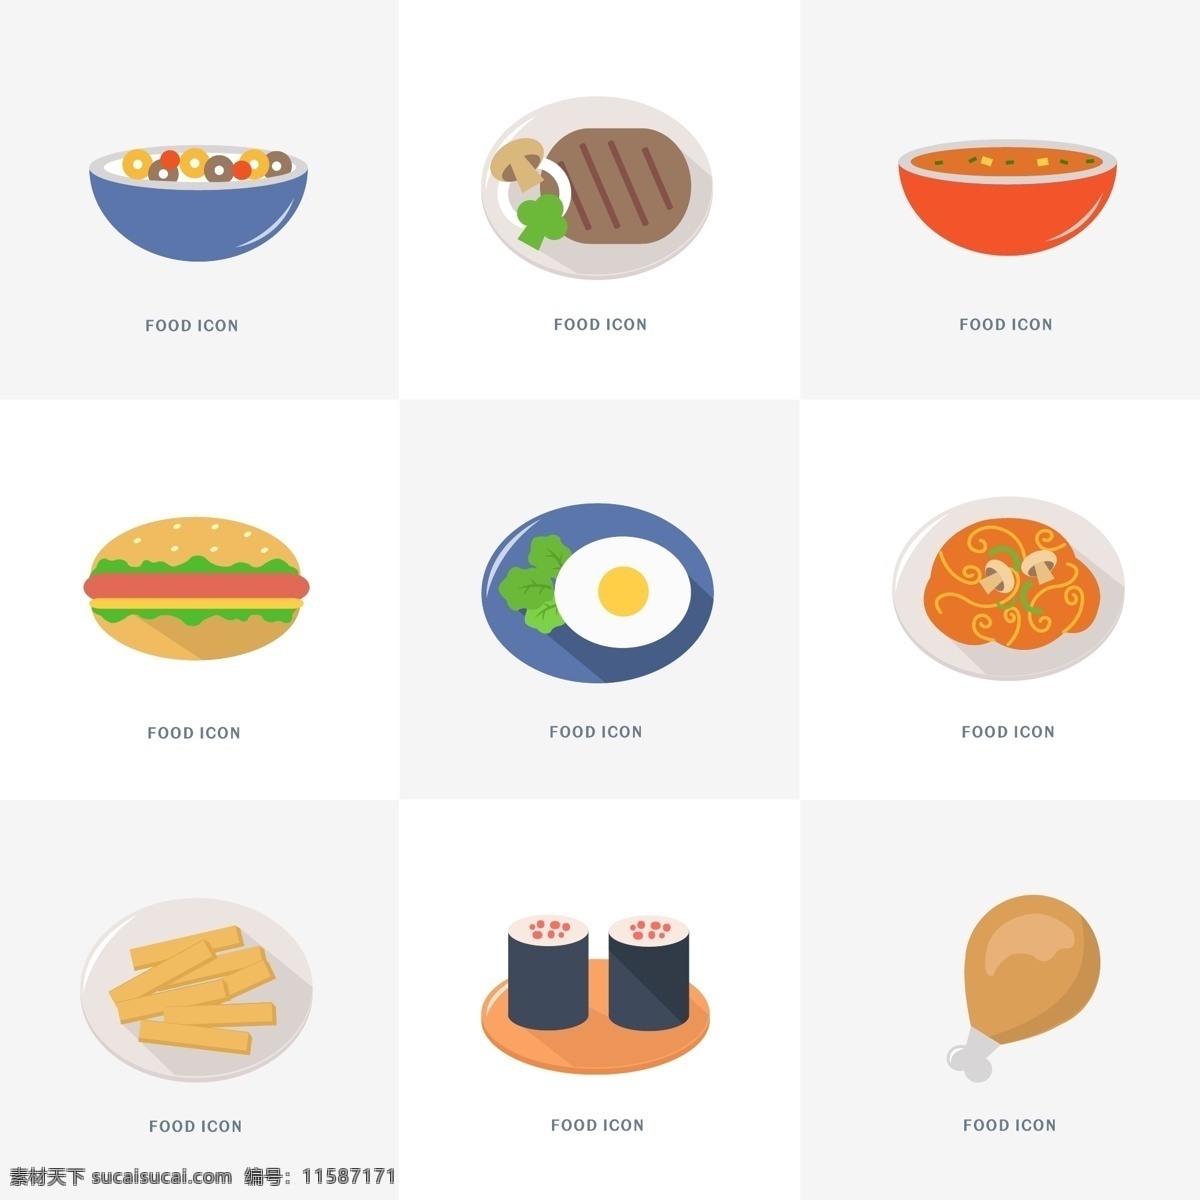 矢量 食物 图标 食物图标 蔬菜图标 寿司图标